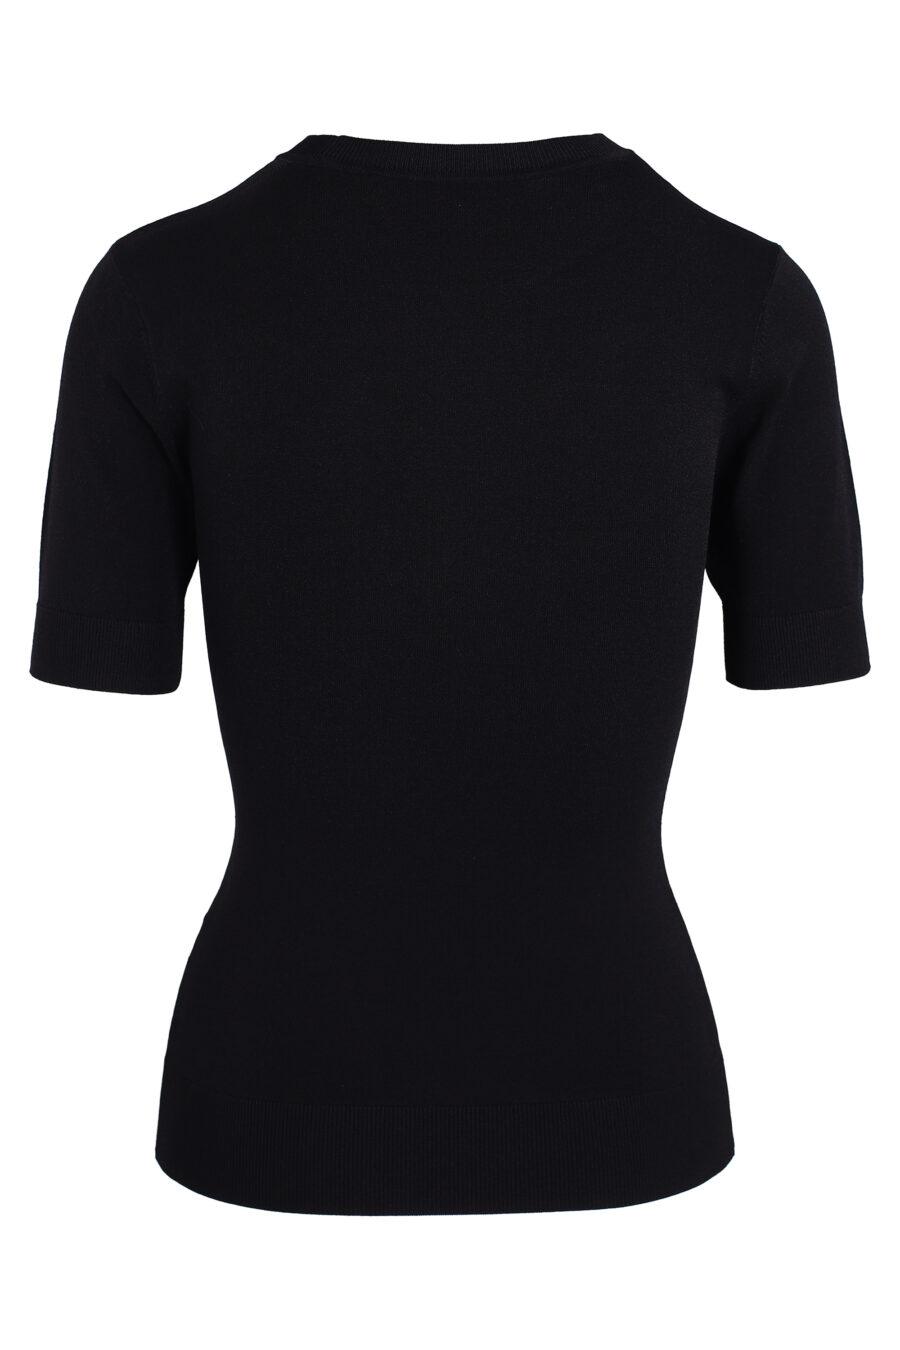 Camiseta negra con apertura en el centro - IMG 3360